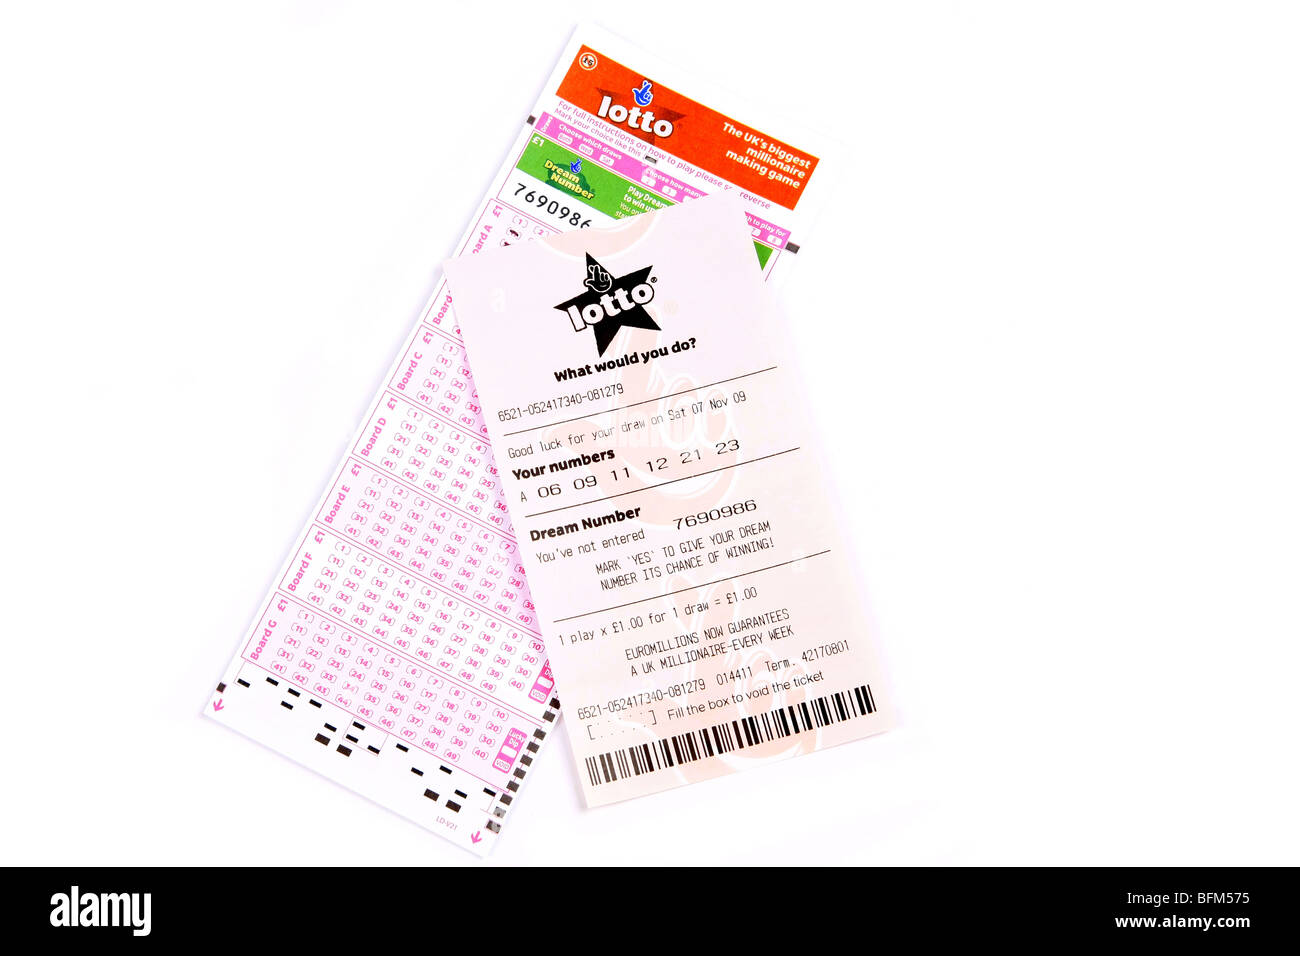 Lottery draw Banque de photographies et d'images à haute résolution - Alamy